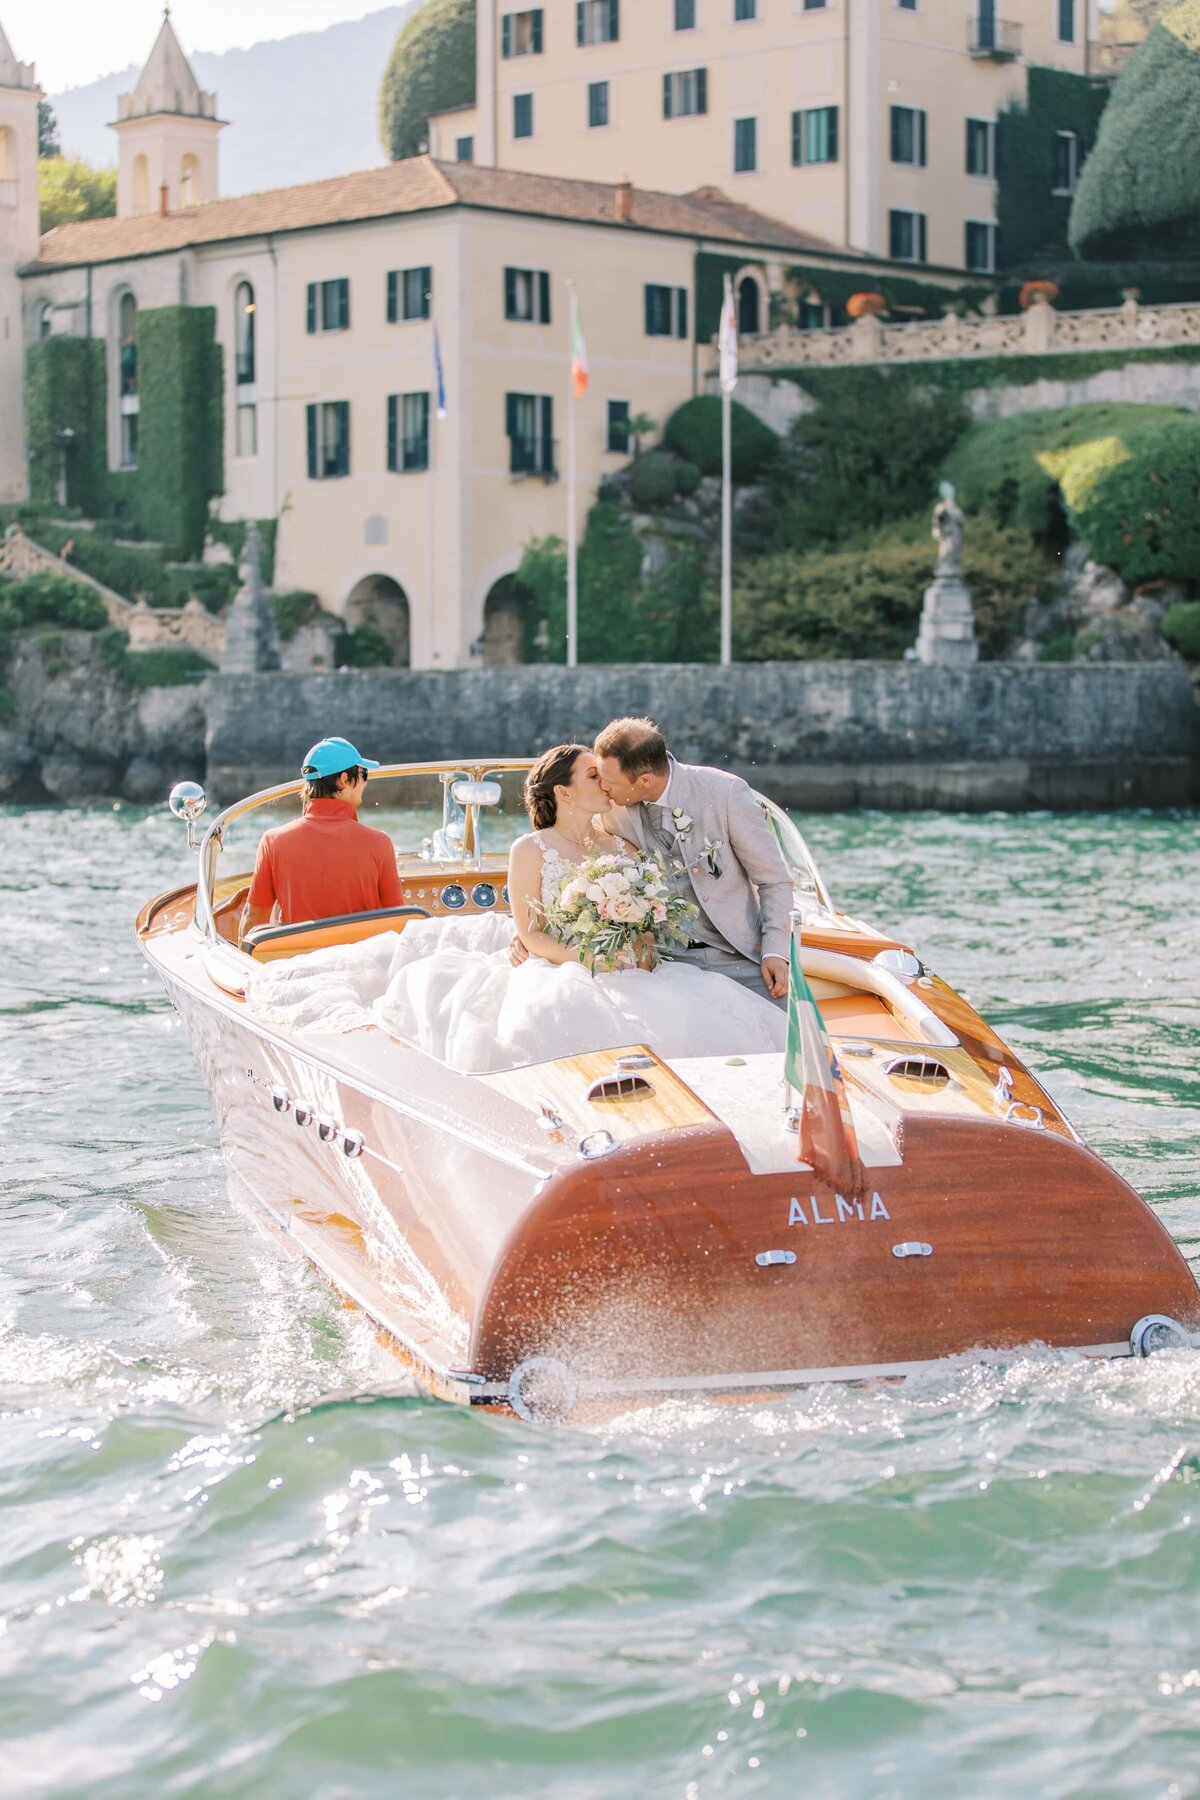 Bröllopspar pussas i en båt utanför Villa Balbianello